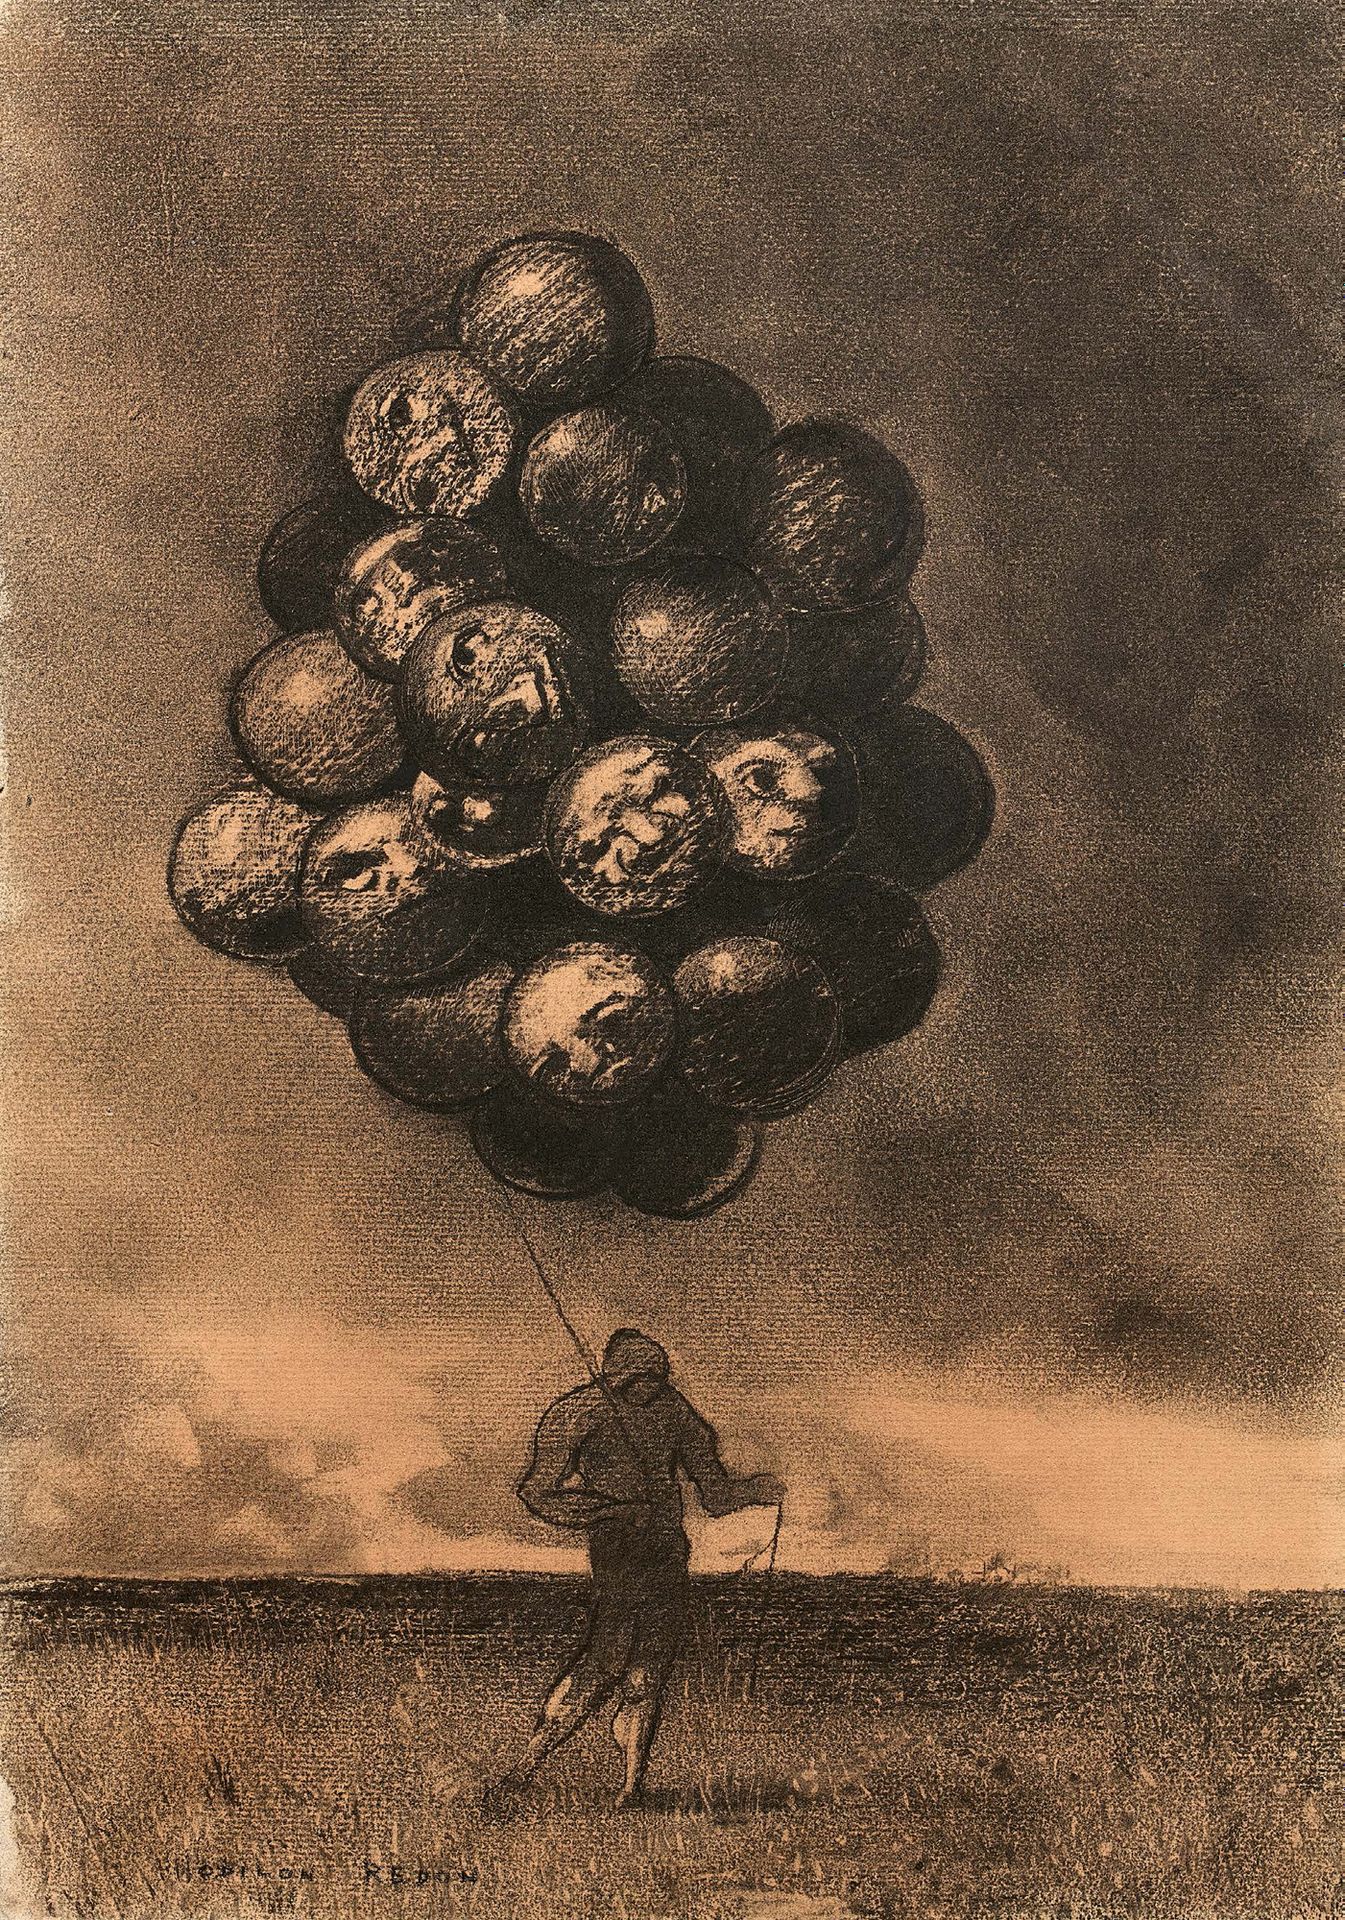 Odilon REDON (1840-1916) 
La grappe ou le marchand de ballons
Kohle- und Weichze&hellip;